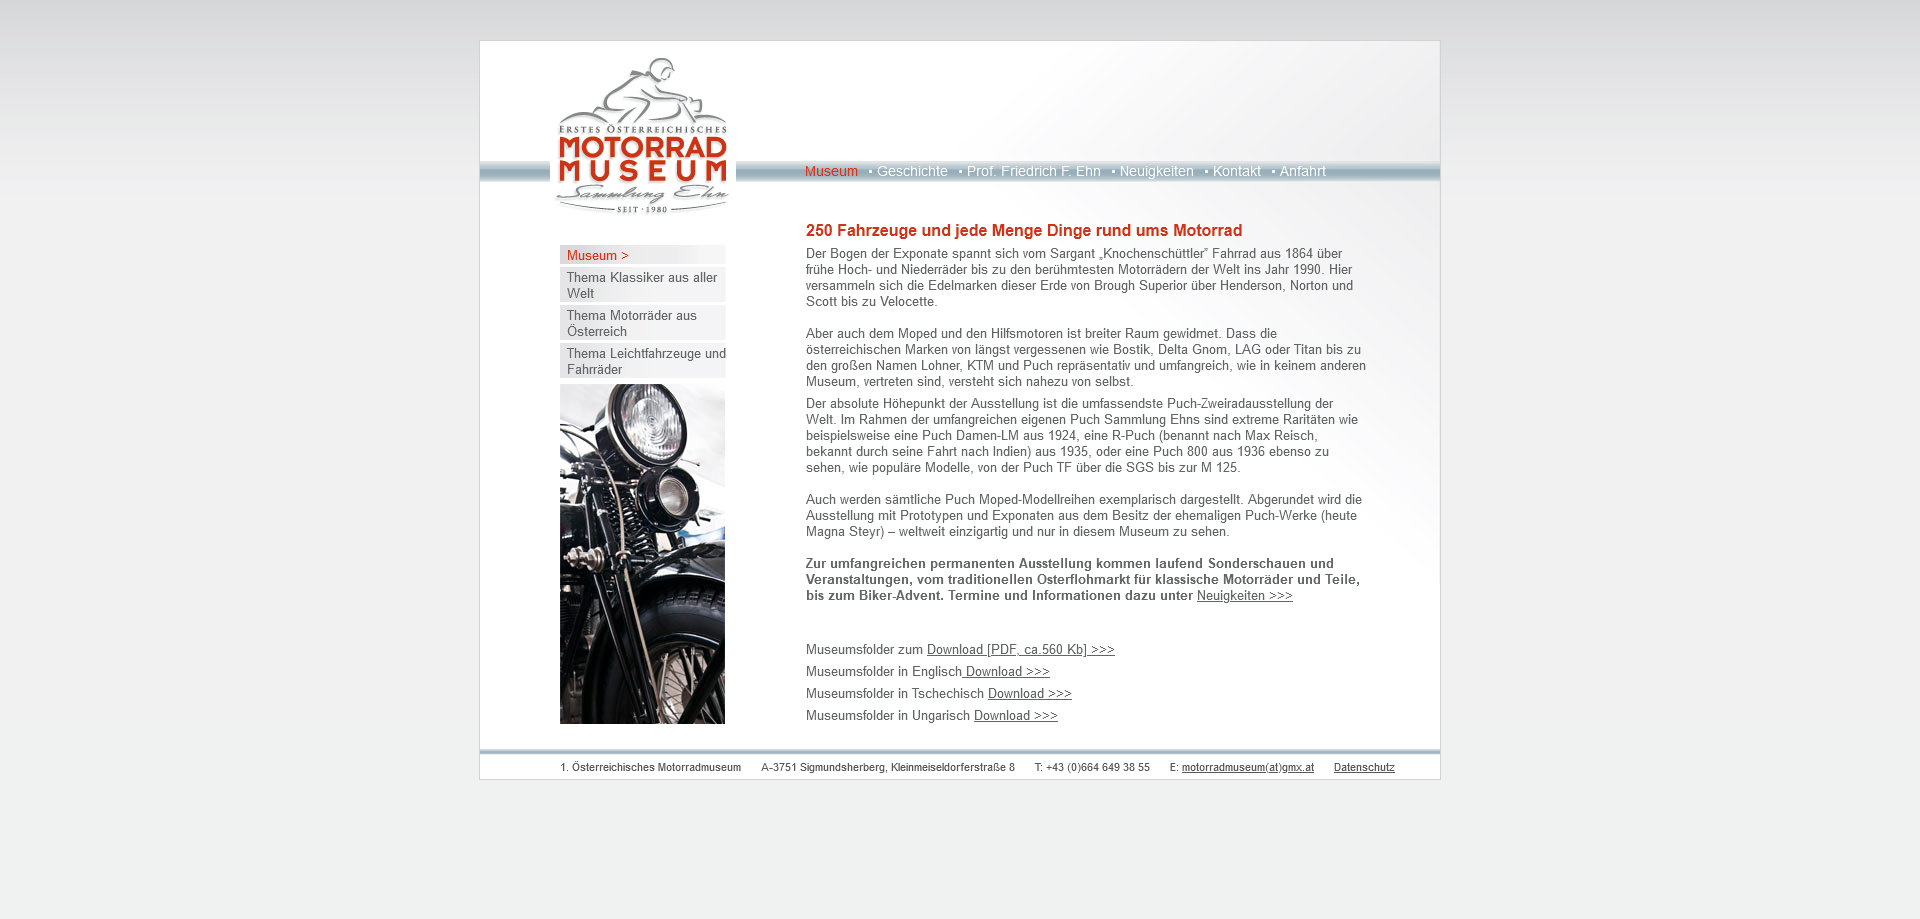 1. Österreichisches Motorradmuseum